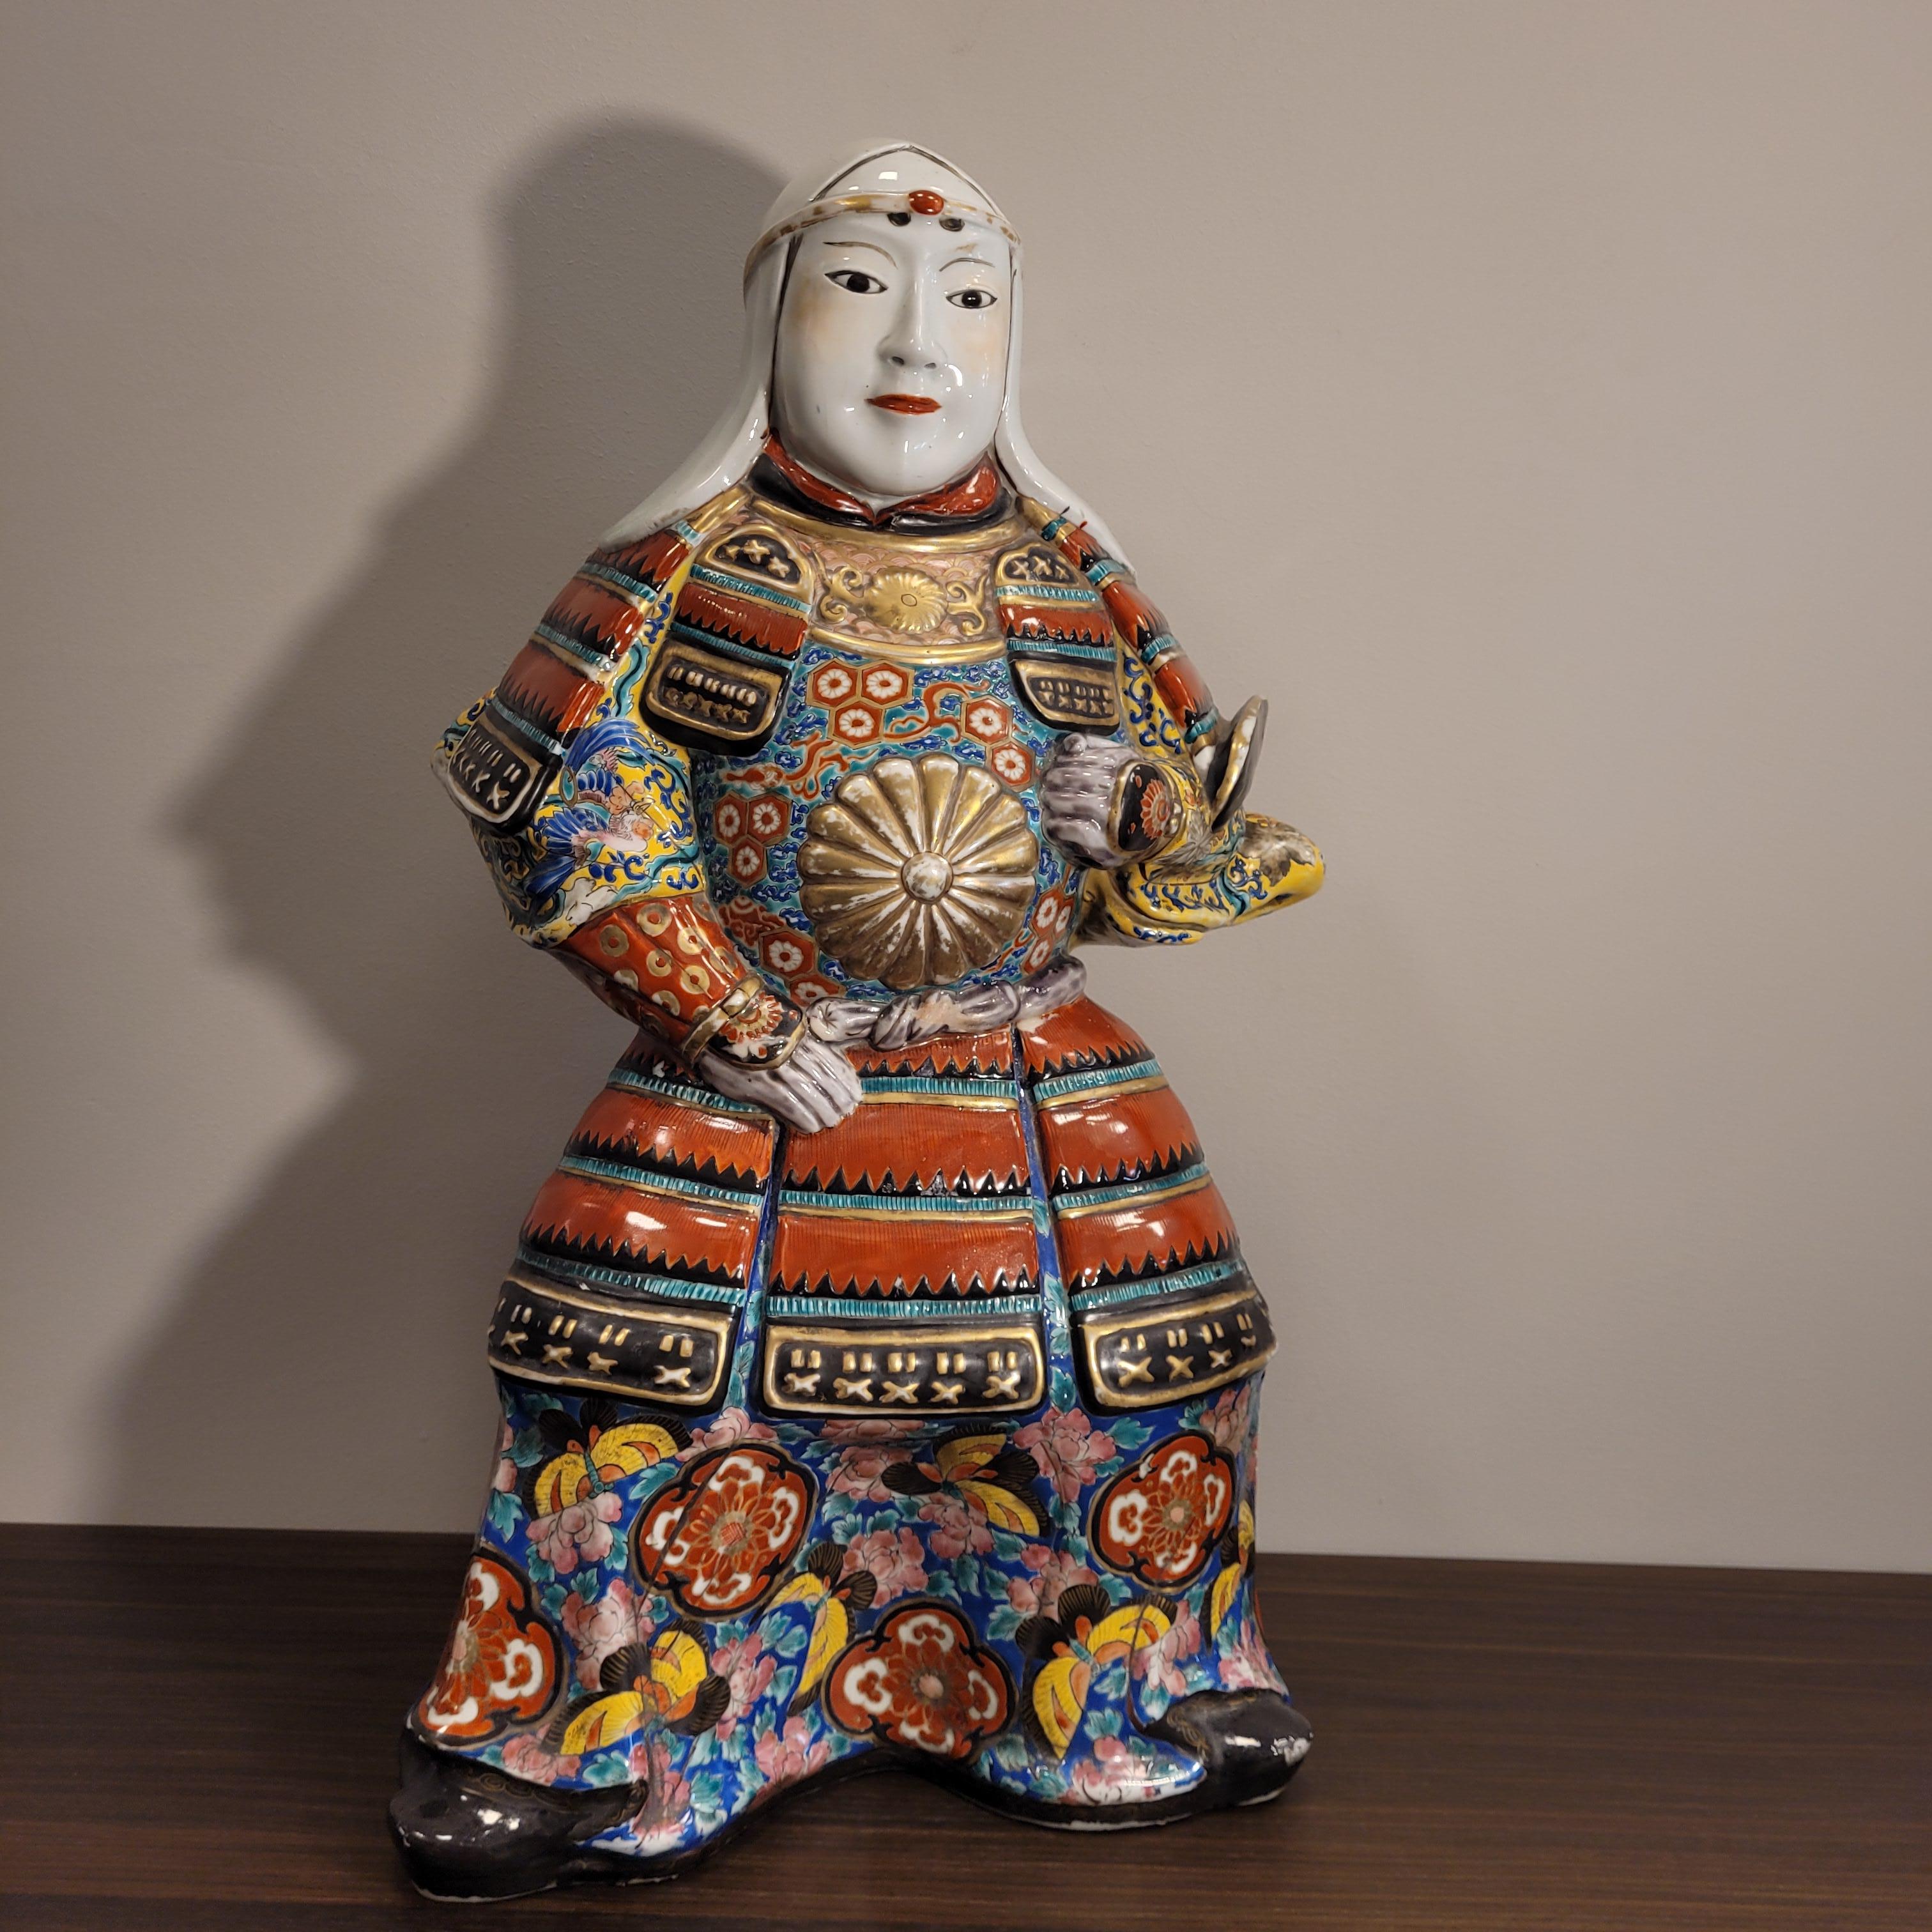 Extraordinaire et grand samouraï en porcelaine peinte à la main avec l'habit caractéristique de la période Edo 1603-1868, lorsque la famille Tokugawa régnait sur le Japon. Cette époque porte le nom de la ville d'Edo, l'actuelle Tokyo.
L'origine des